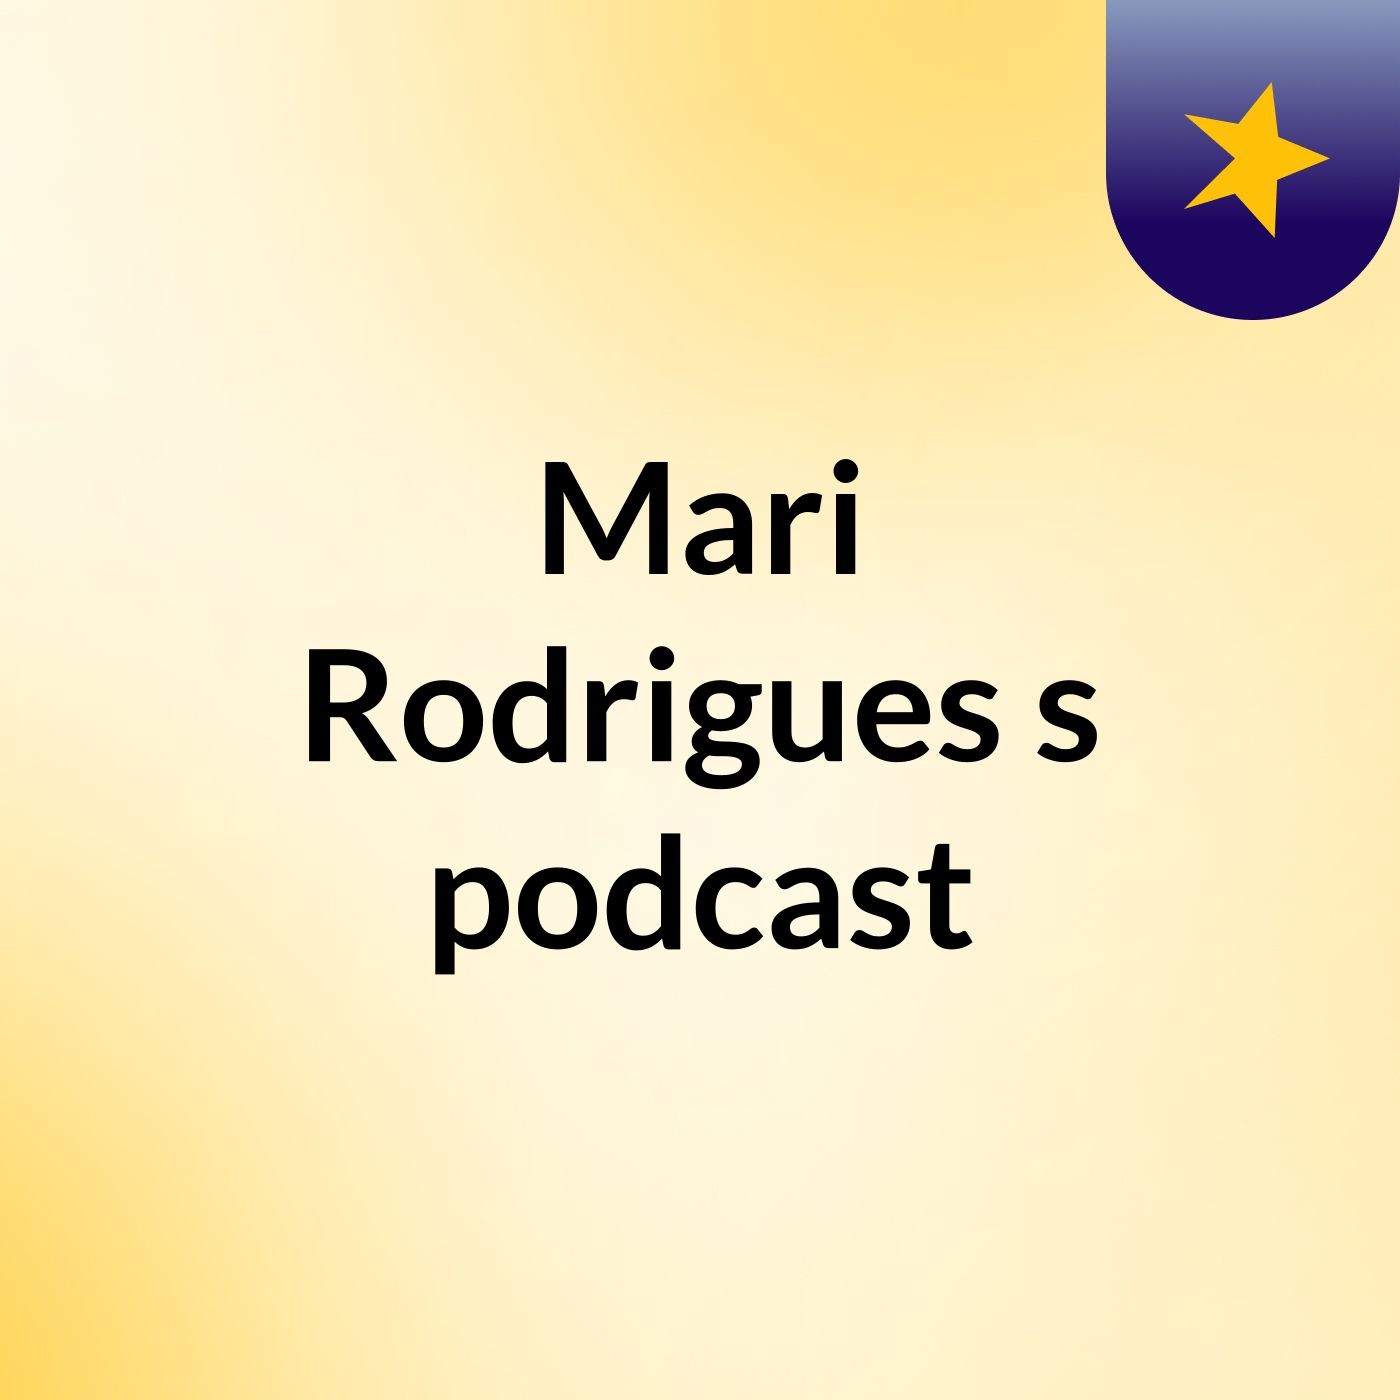 Mari Rodrigues's podcast